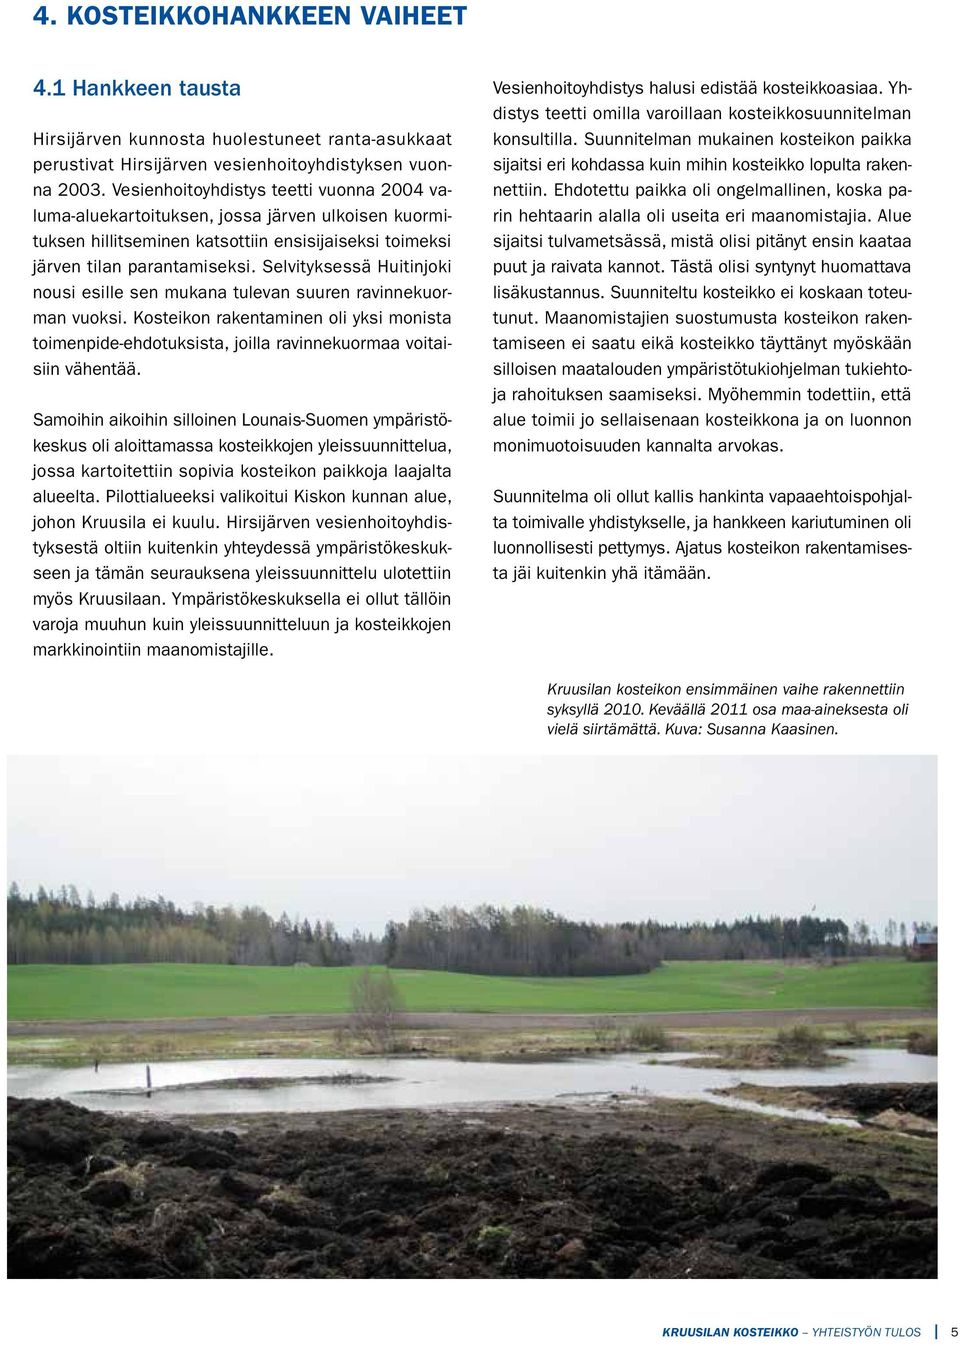 Selvityksessä Huitinjoki nousi esille sen mukana tulevan suuren ravinnekuorman vuoksi. Kosteikon rakentaminen oli yksi monista toimenpide-ehdotuksista, joilla ravinnekuormaa voitaisiin vähentää.